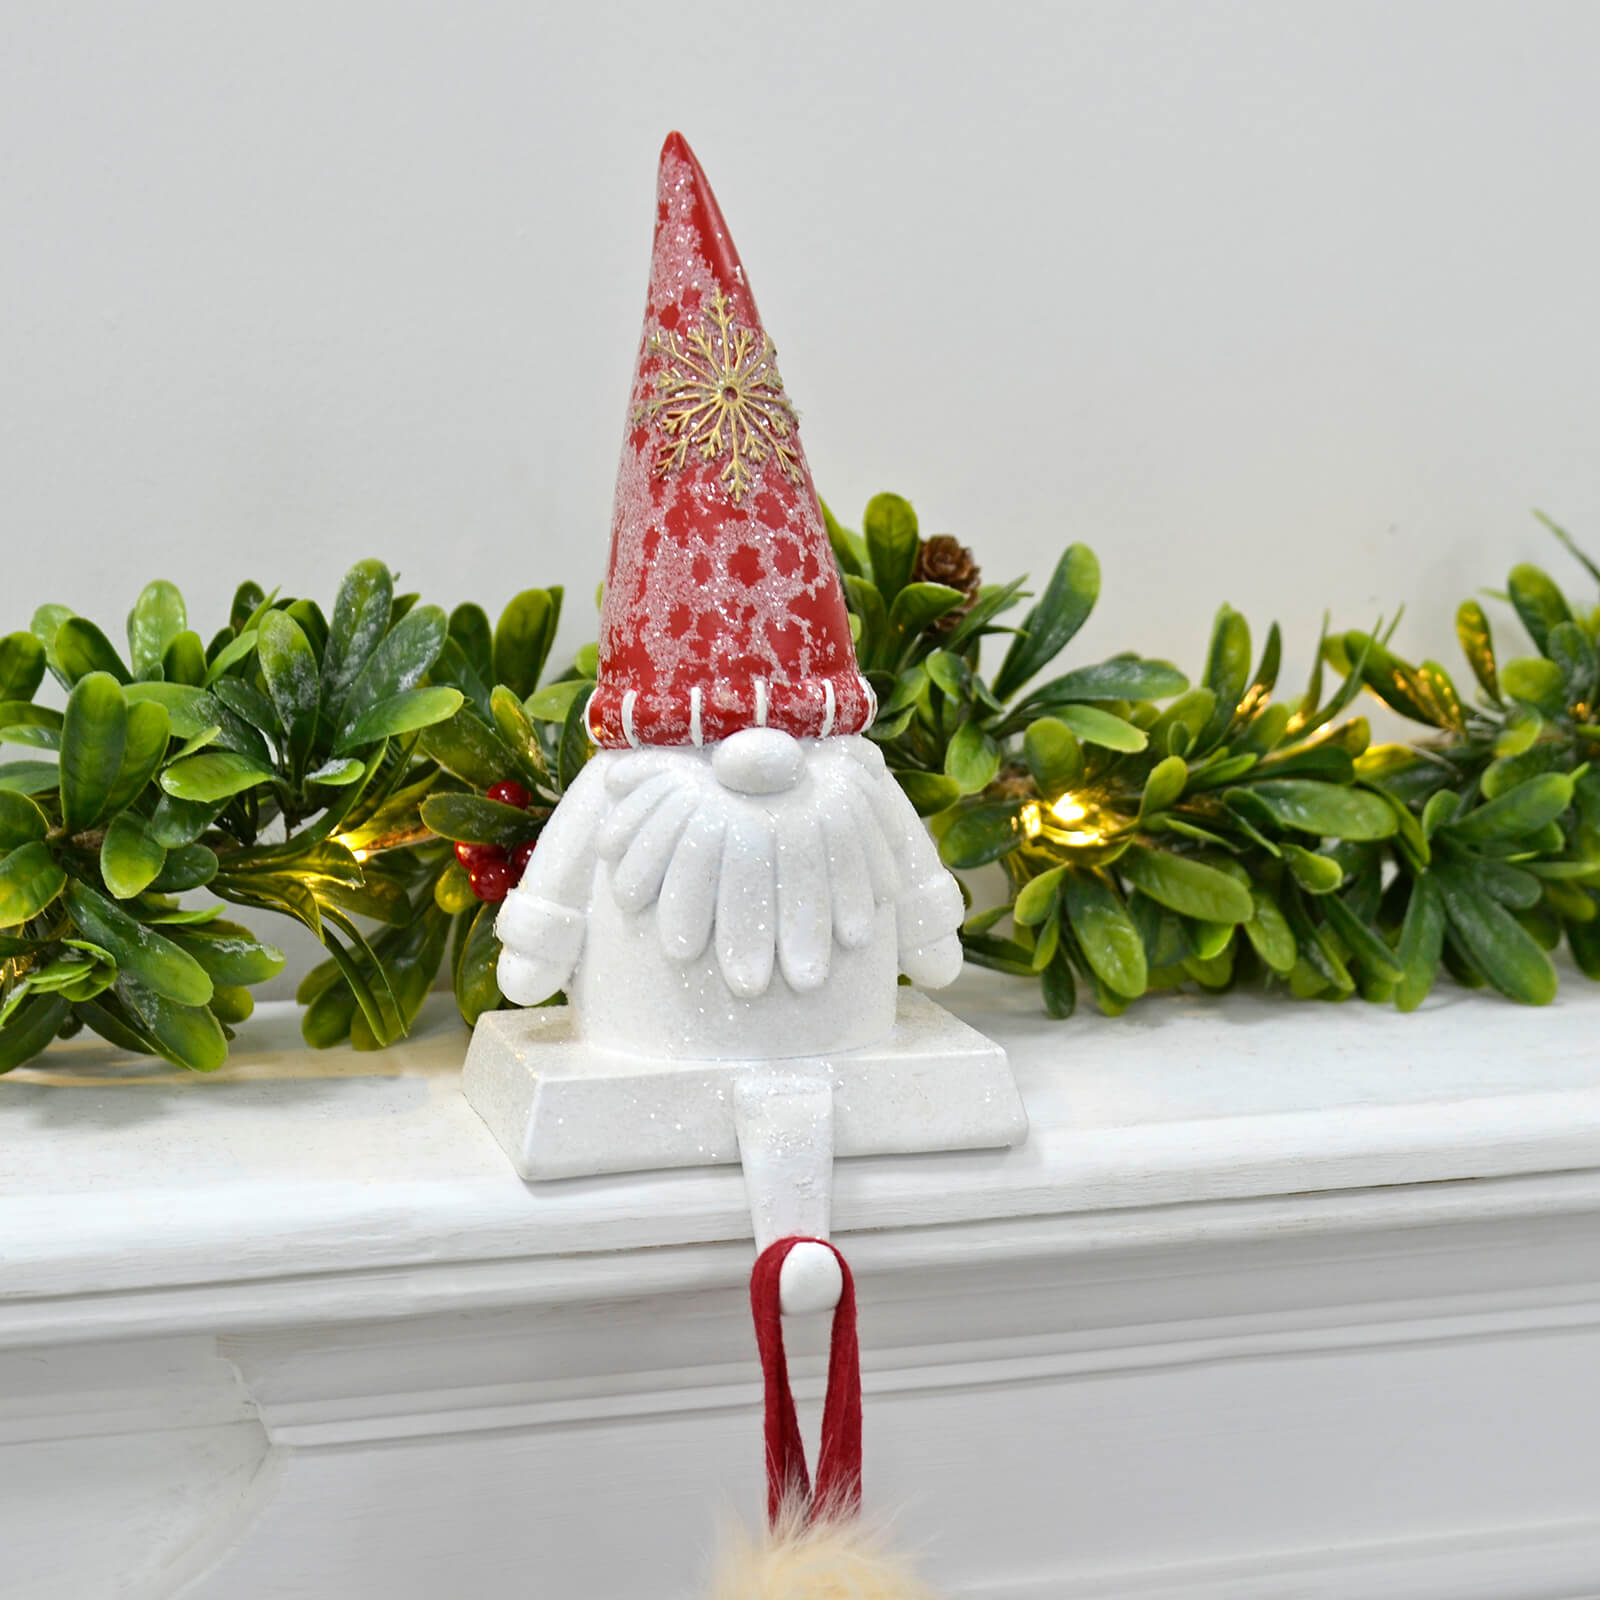 Mr Crimbo Novelty Gonk Christmas Stocking Hanger Santa Gnome - MrCrimbo.co.uk -XS7168 - Red -gonk christmas decoration